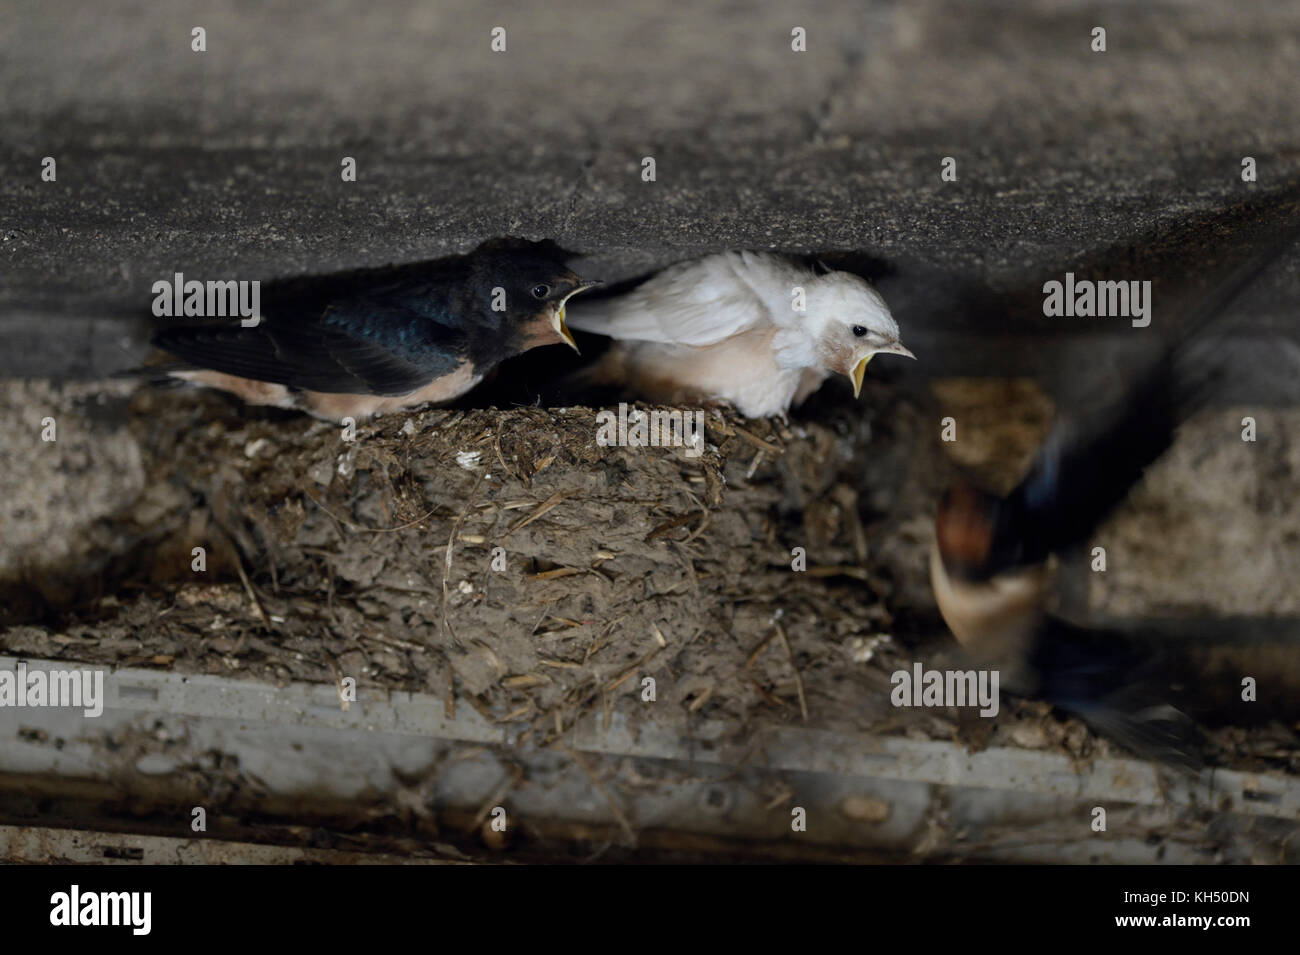 Granero de golondrinas ( Hirundo rustica ), adulto que alimenta sus polluelos en nido, dos de ellos con plumaje blanco, leucisma, wildilfe, Europa. Foto de stock